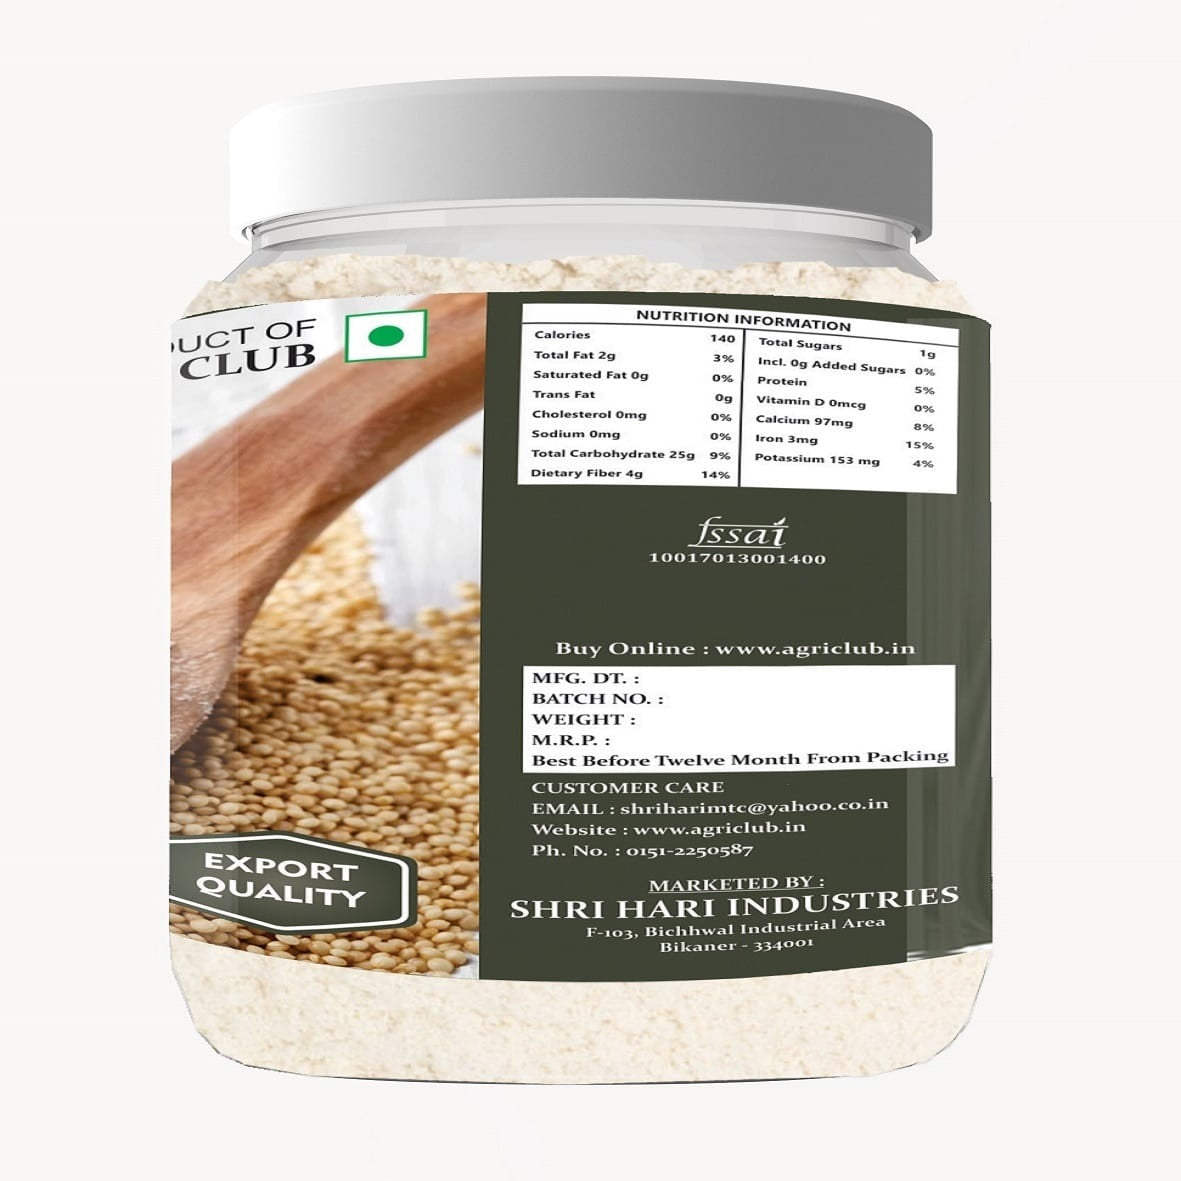 Amaranth Flour Premium Quality 500 GM